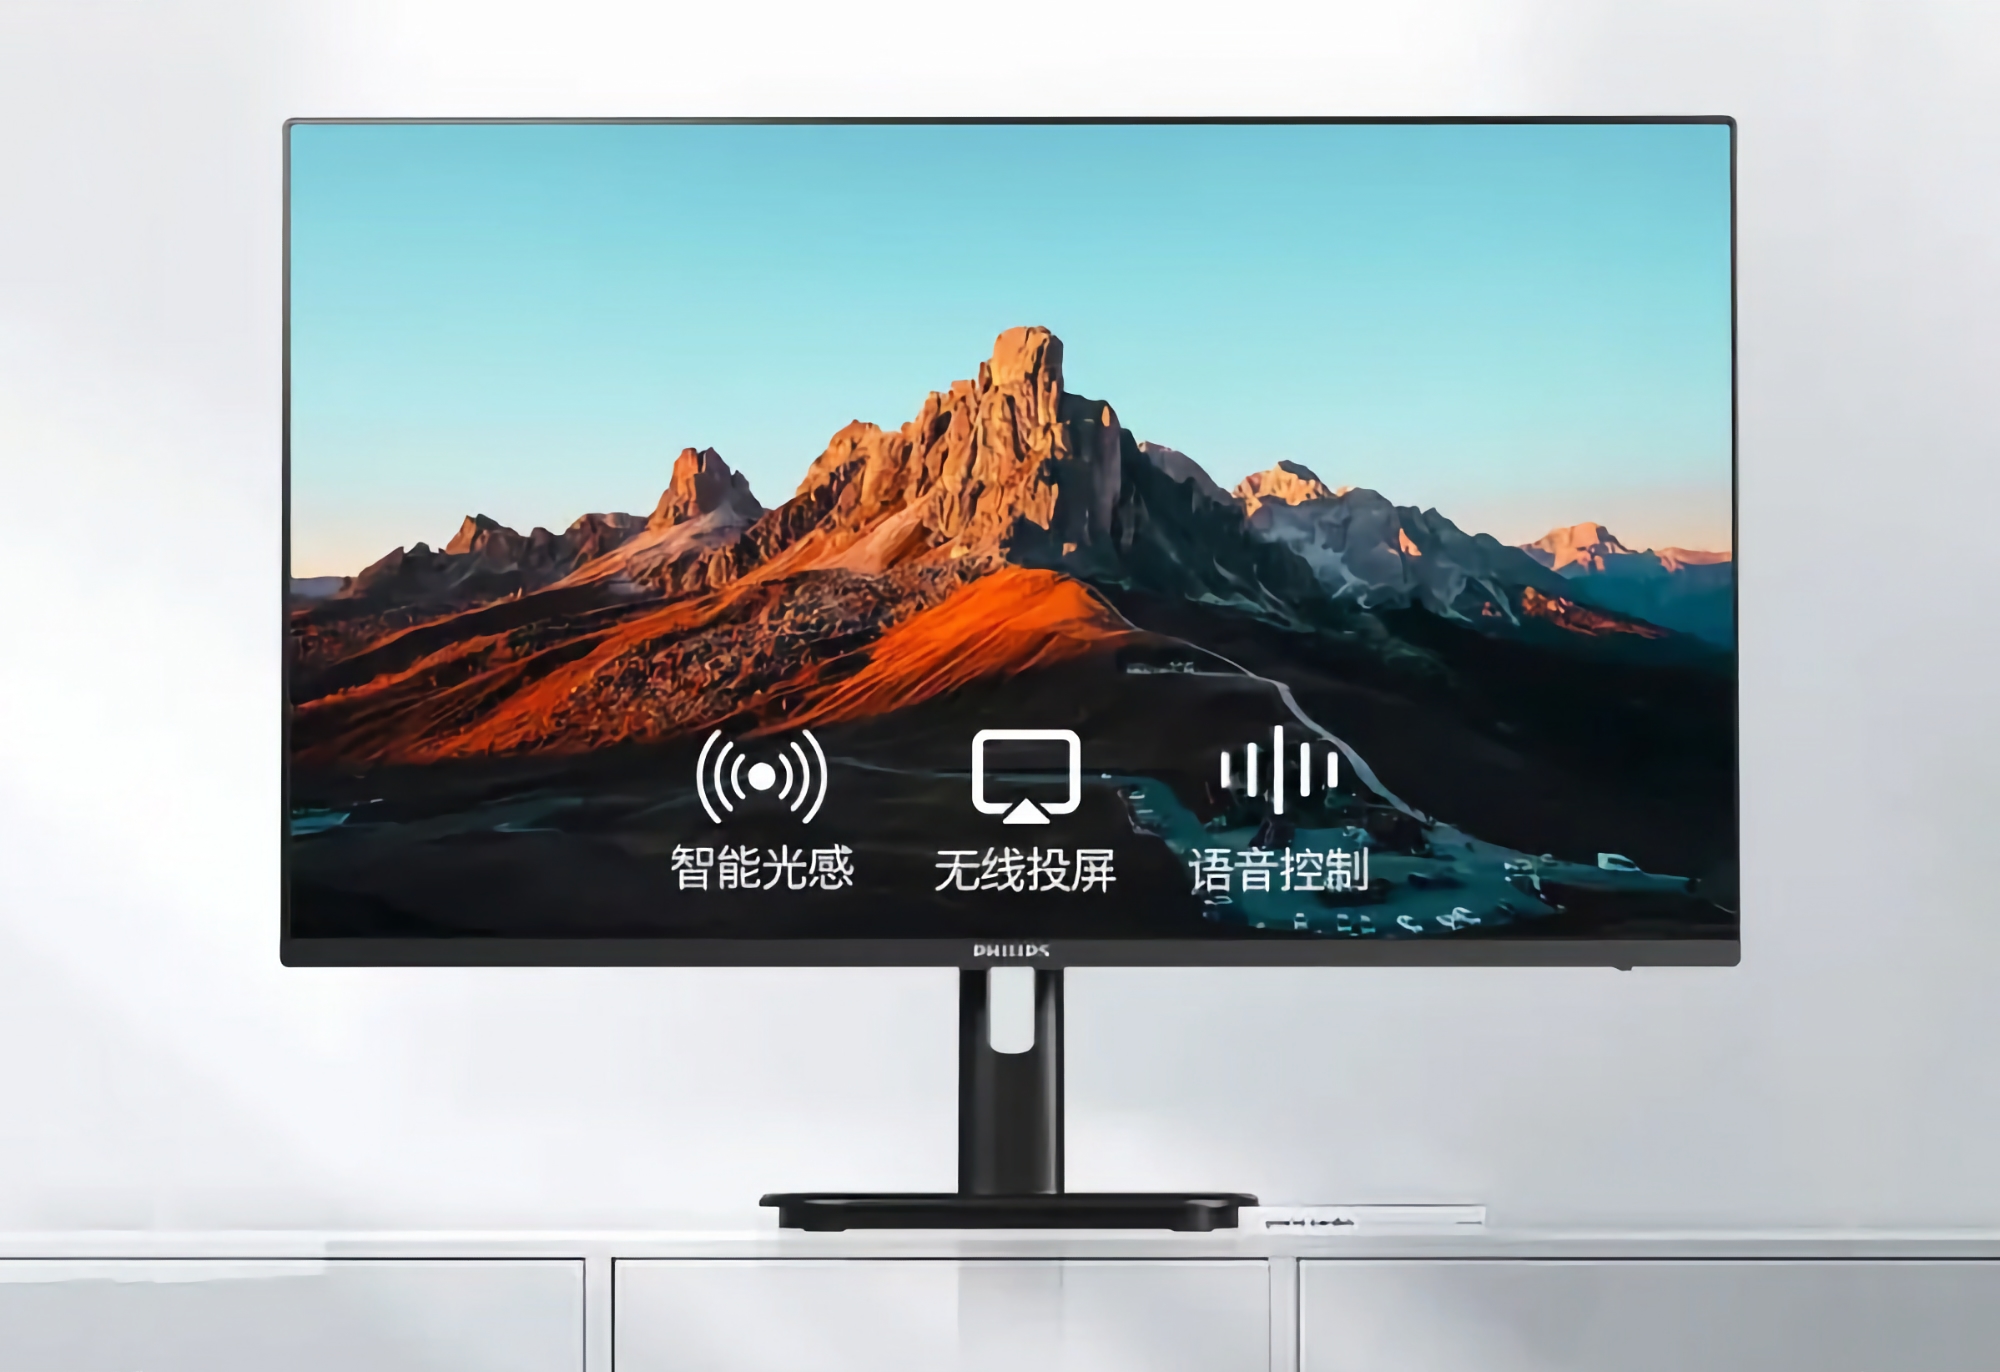 Philips zaprezentował 32E1S5900: 32-calowy monitor z rozdzielczością 4K, Wi-Fi 5, dwoma trybami i systemem Android za 281 USD.